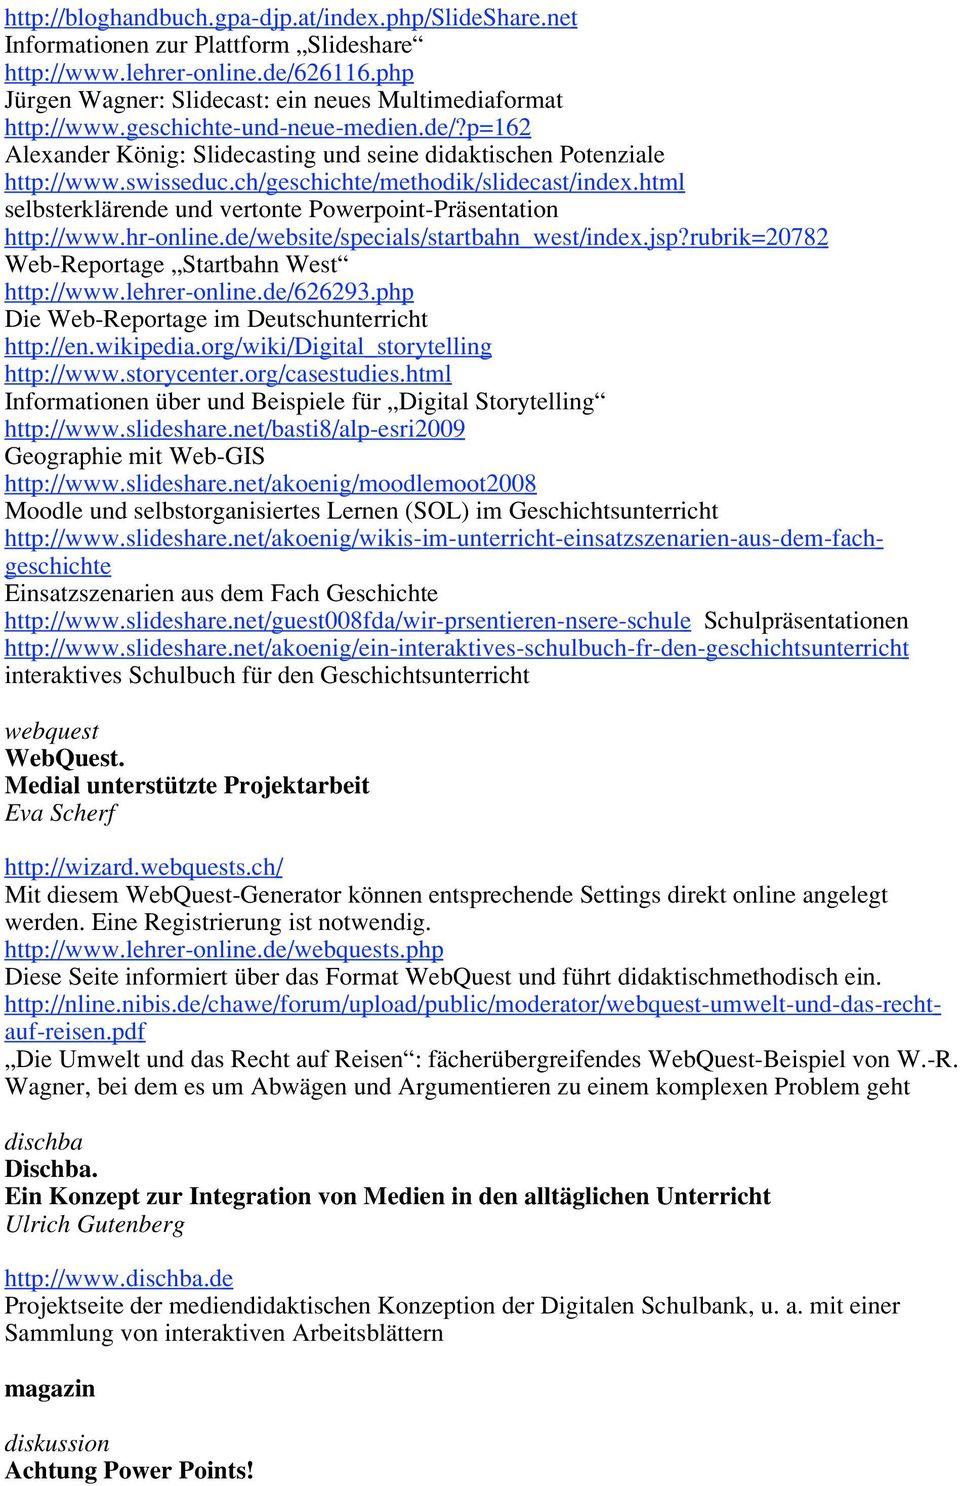 html selbsterklärende und vertonte Powerpoint-Präsentation http://www.hr-online.de/website/specials/startbahn_west/index.jsp?rubrik=20782 Web-Reportage Startbahn West http://www.lehrer-online.